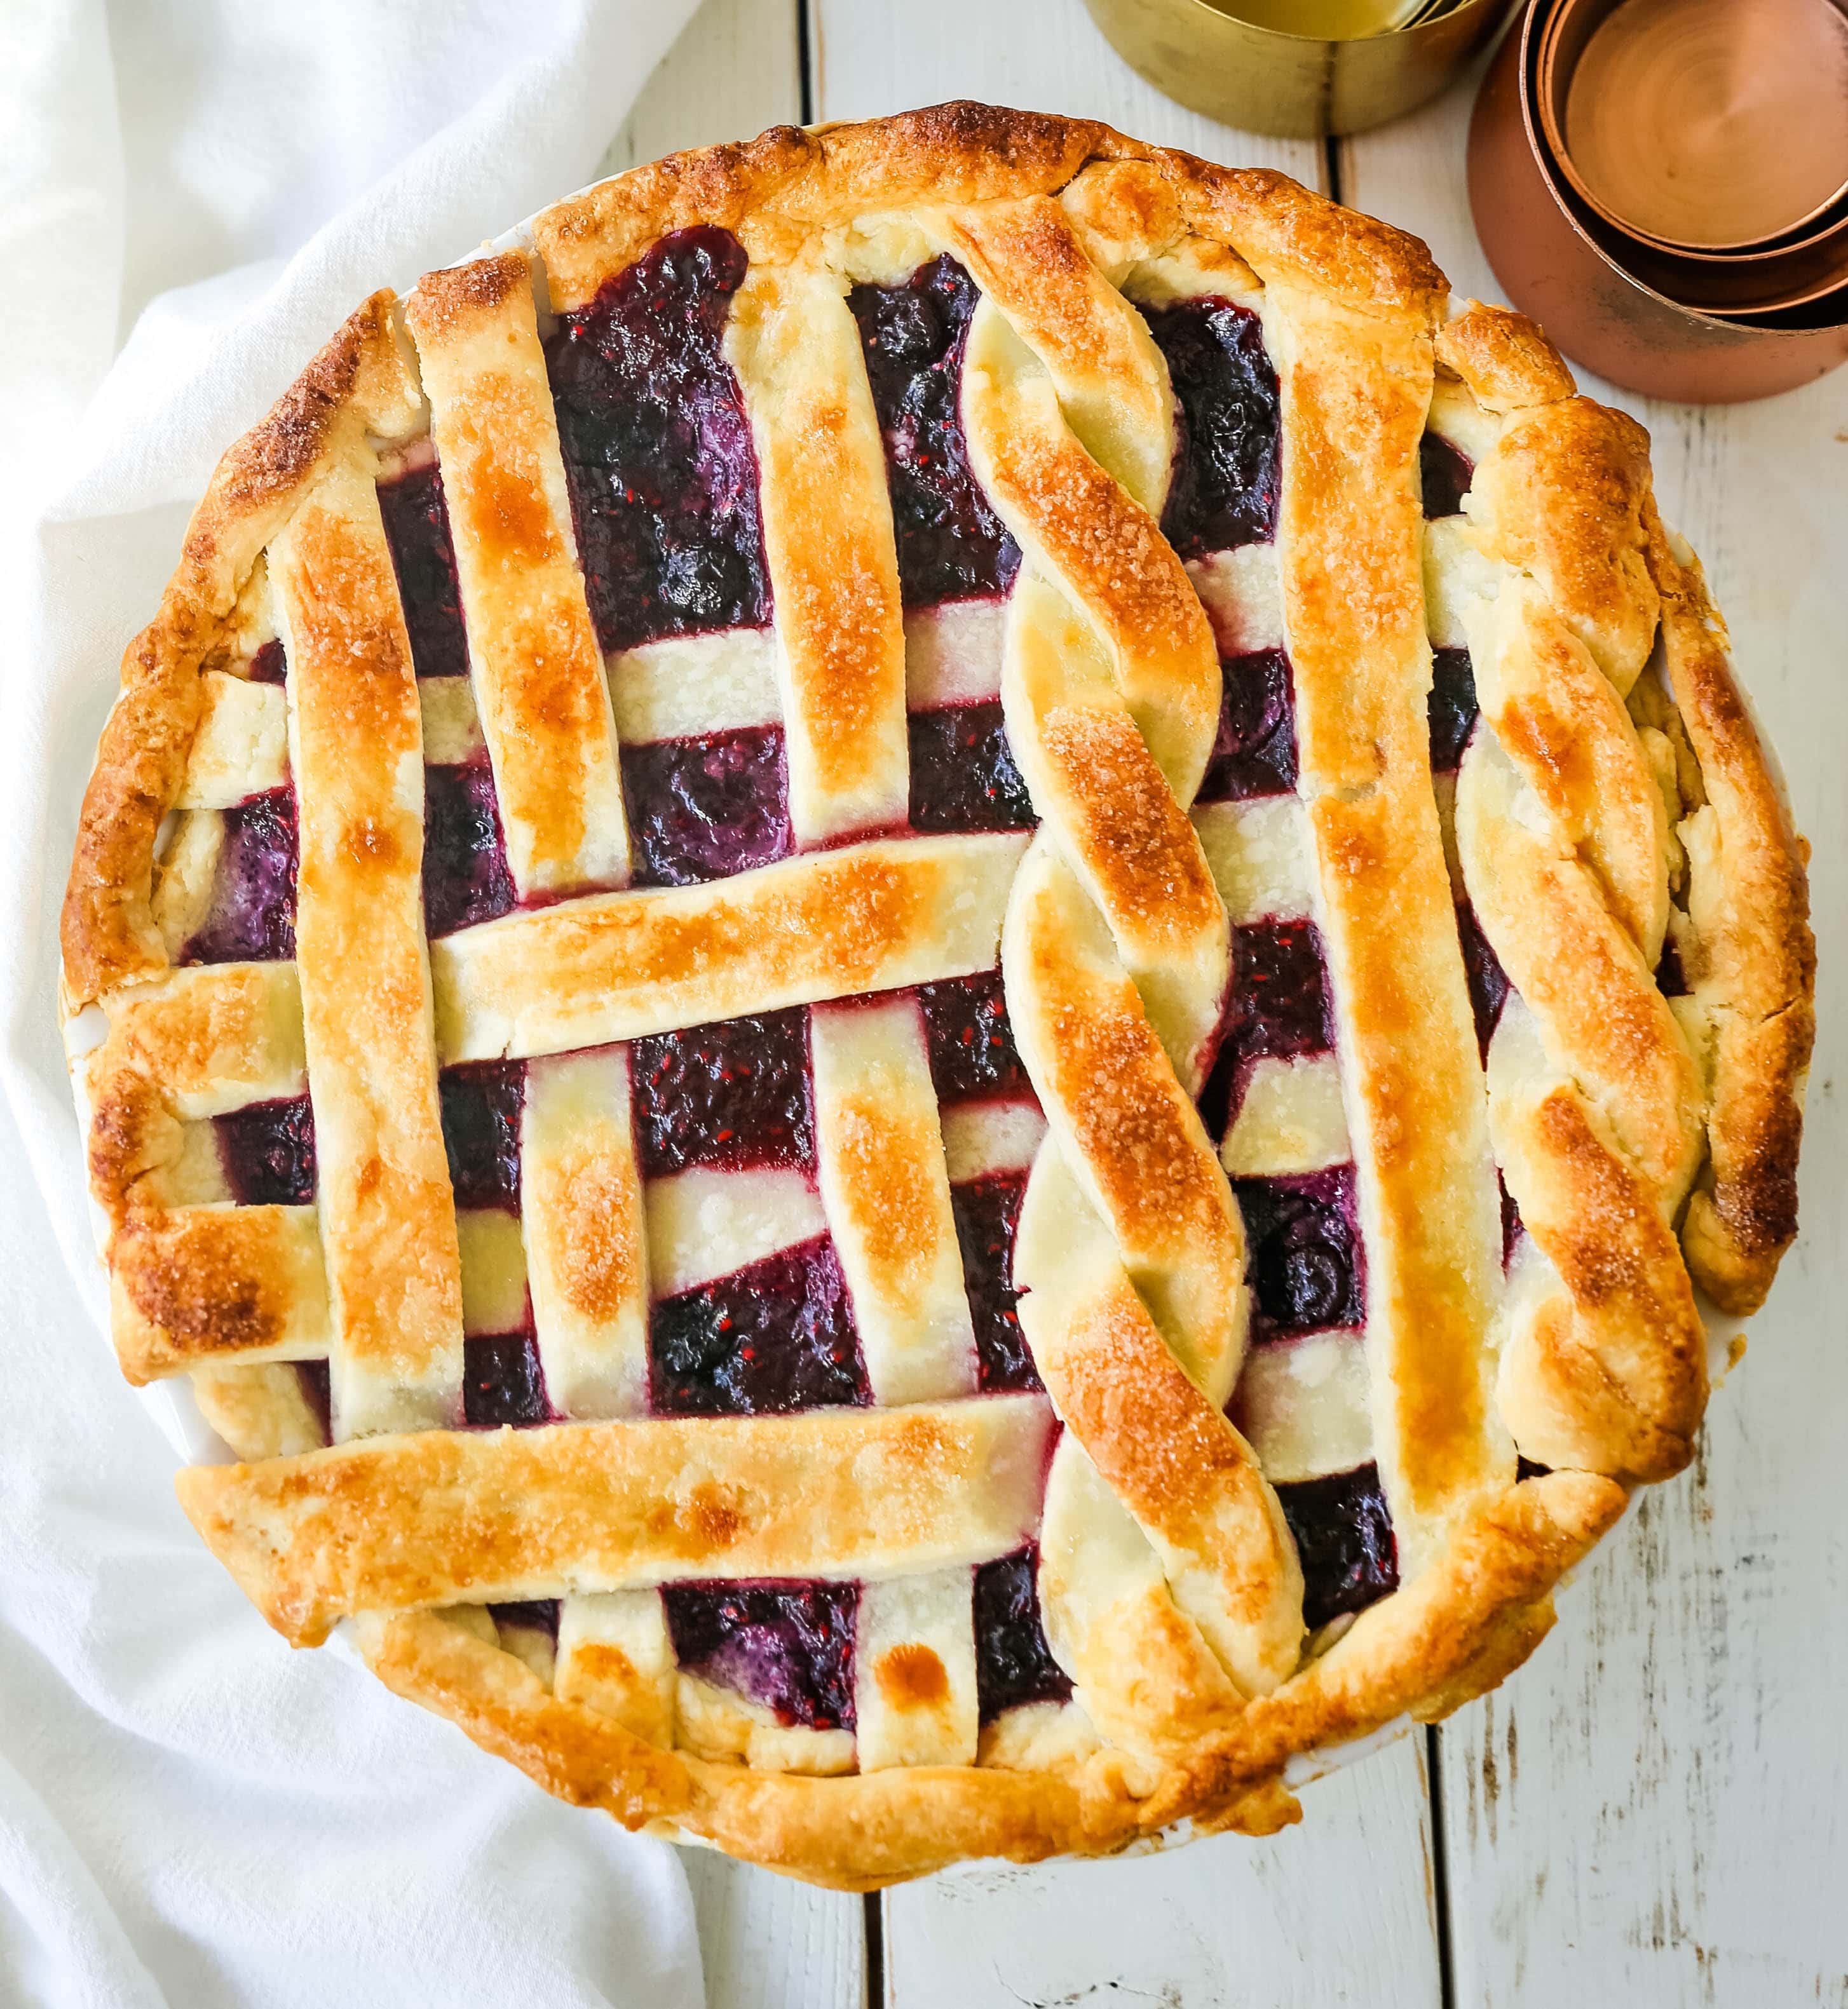 Triple Berry Pie. La meilleure recette de tarte aux baies faite maison avec une croûte de tarte beurrée. Complétez-la avec de la glace à la gousse de vanille et vous avez le dessert aux baies parfait ! La meilleure recette de tarte aux baies. www.modernhoney.com #berrypie #pie #berries #tripleberrypie #thanksgiving